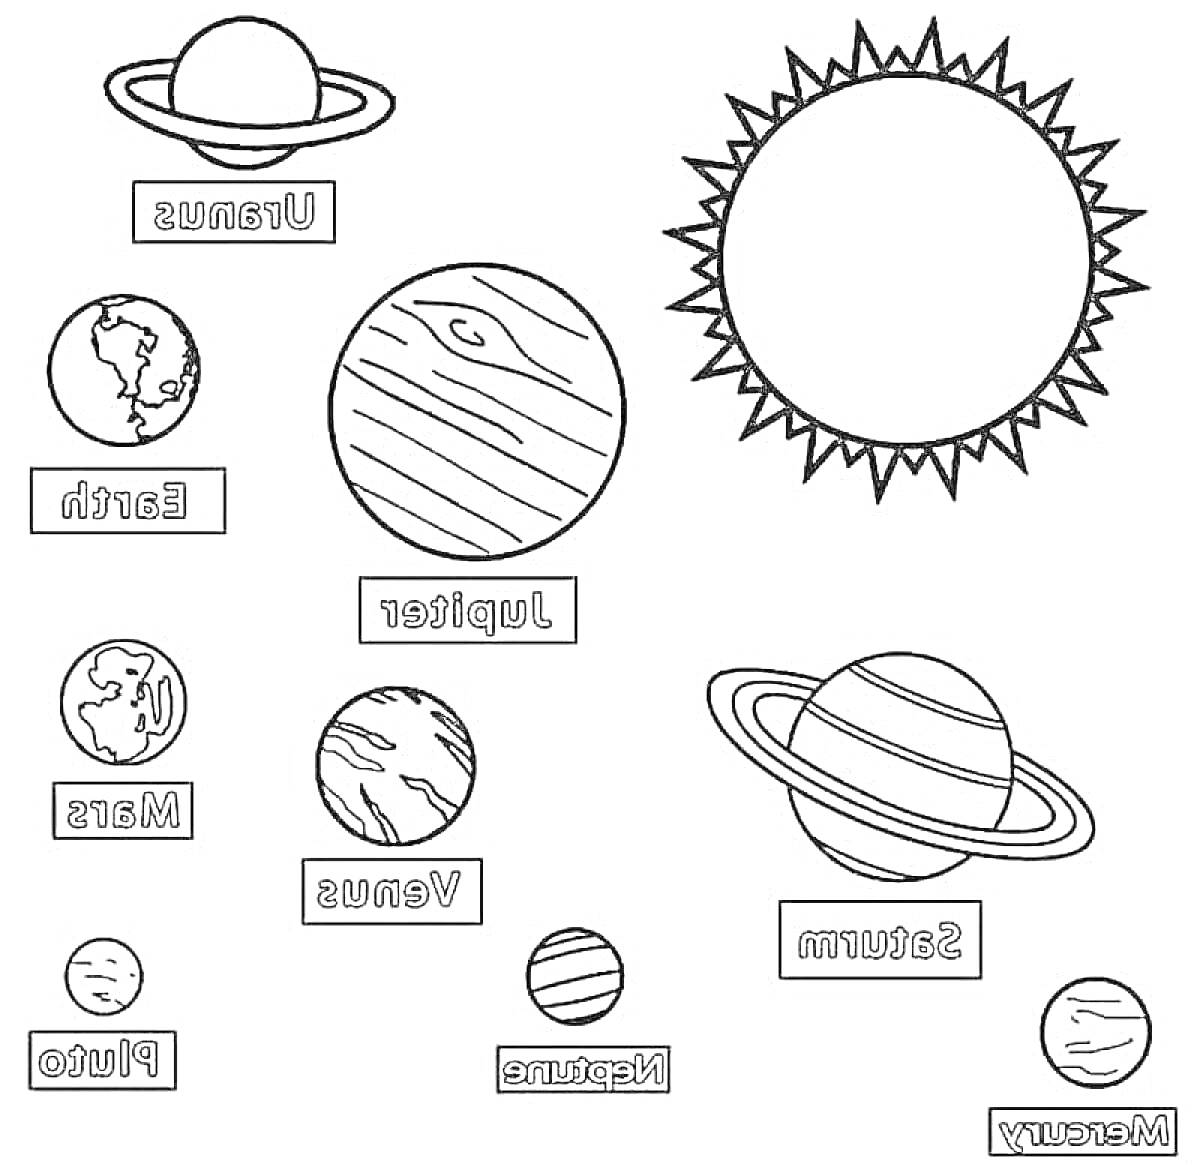 Раскраска планеты солнечной системы, Солнце, Меркурий, Венера, Земля, Марс, Юпитер, Сатурн, Уран, Нептун, Плутон